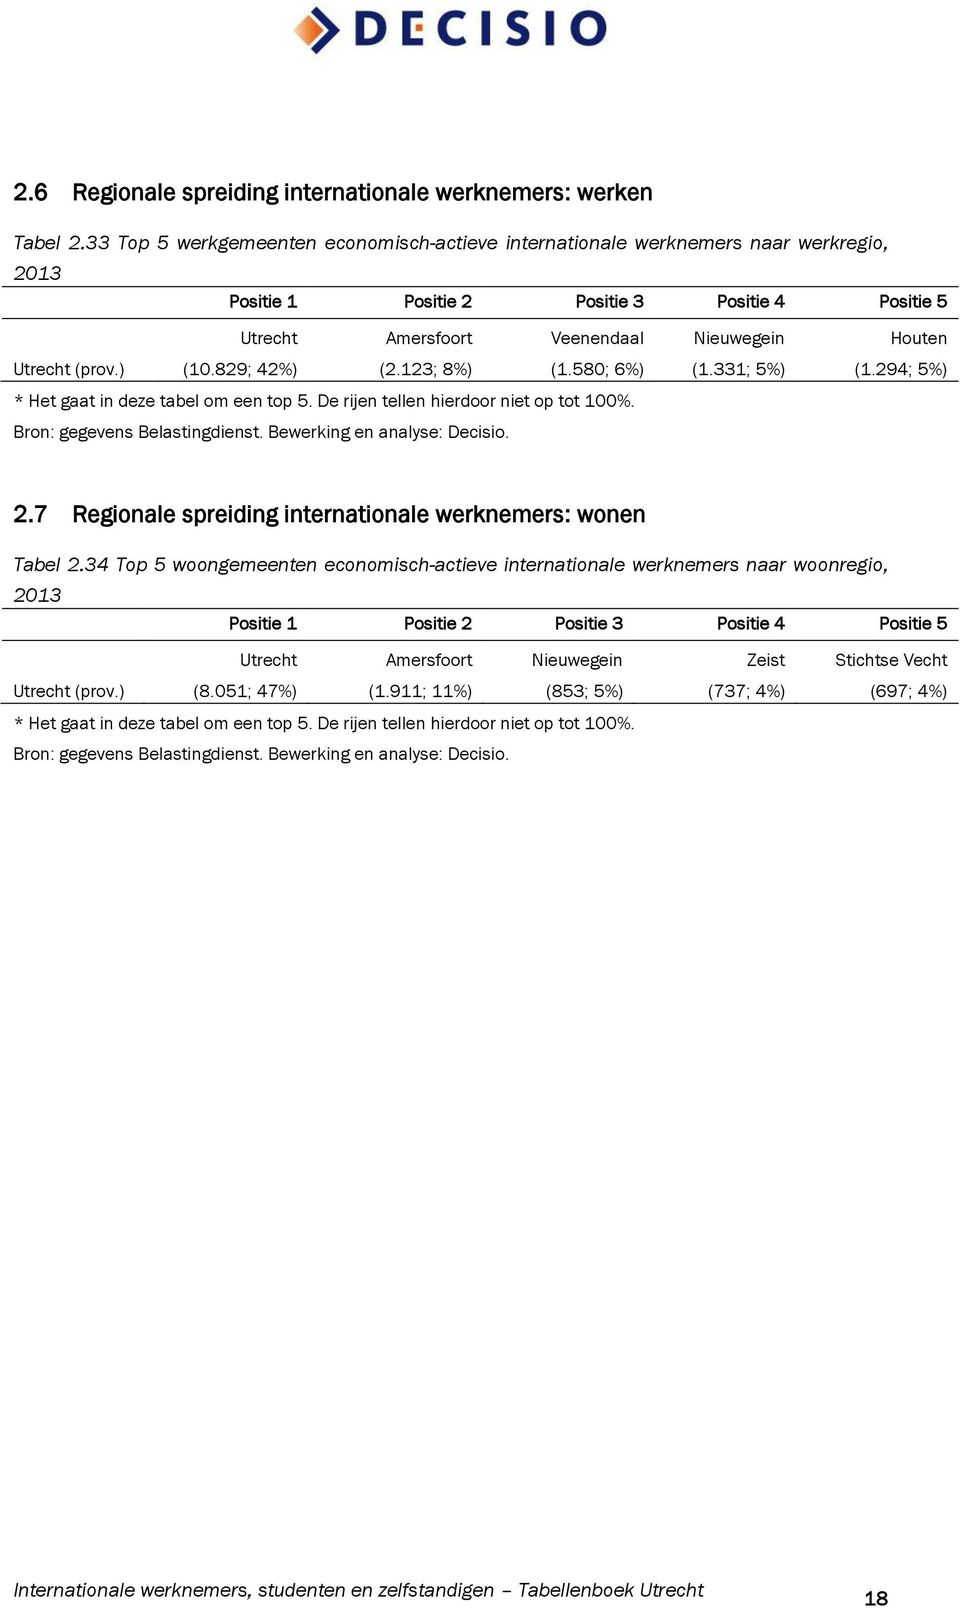 123; 8%) Veenendaal (1.580; 6%) * Het gaat in deze tabel om een top 5. De rijen tellen hierdoor niet op tot 100%. Nieuwegein (1.331; 5%) Houten (1.294; 5%) 2.